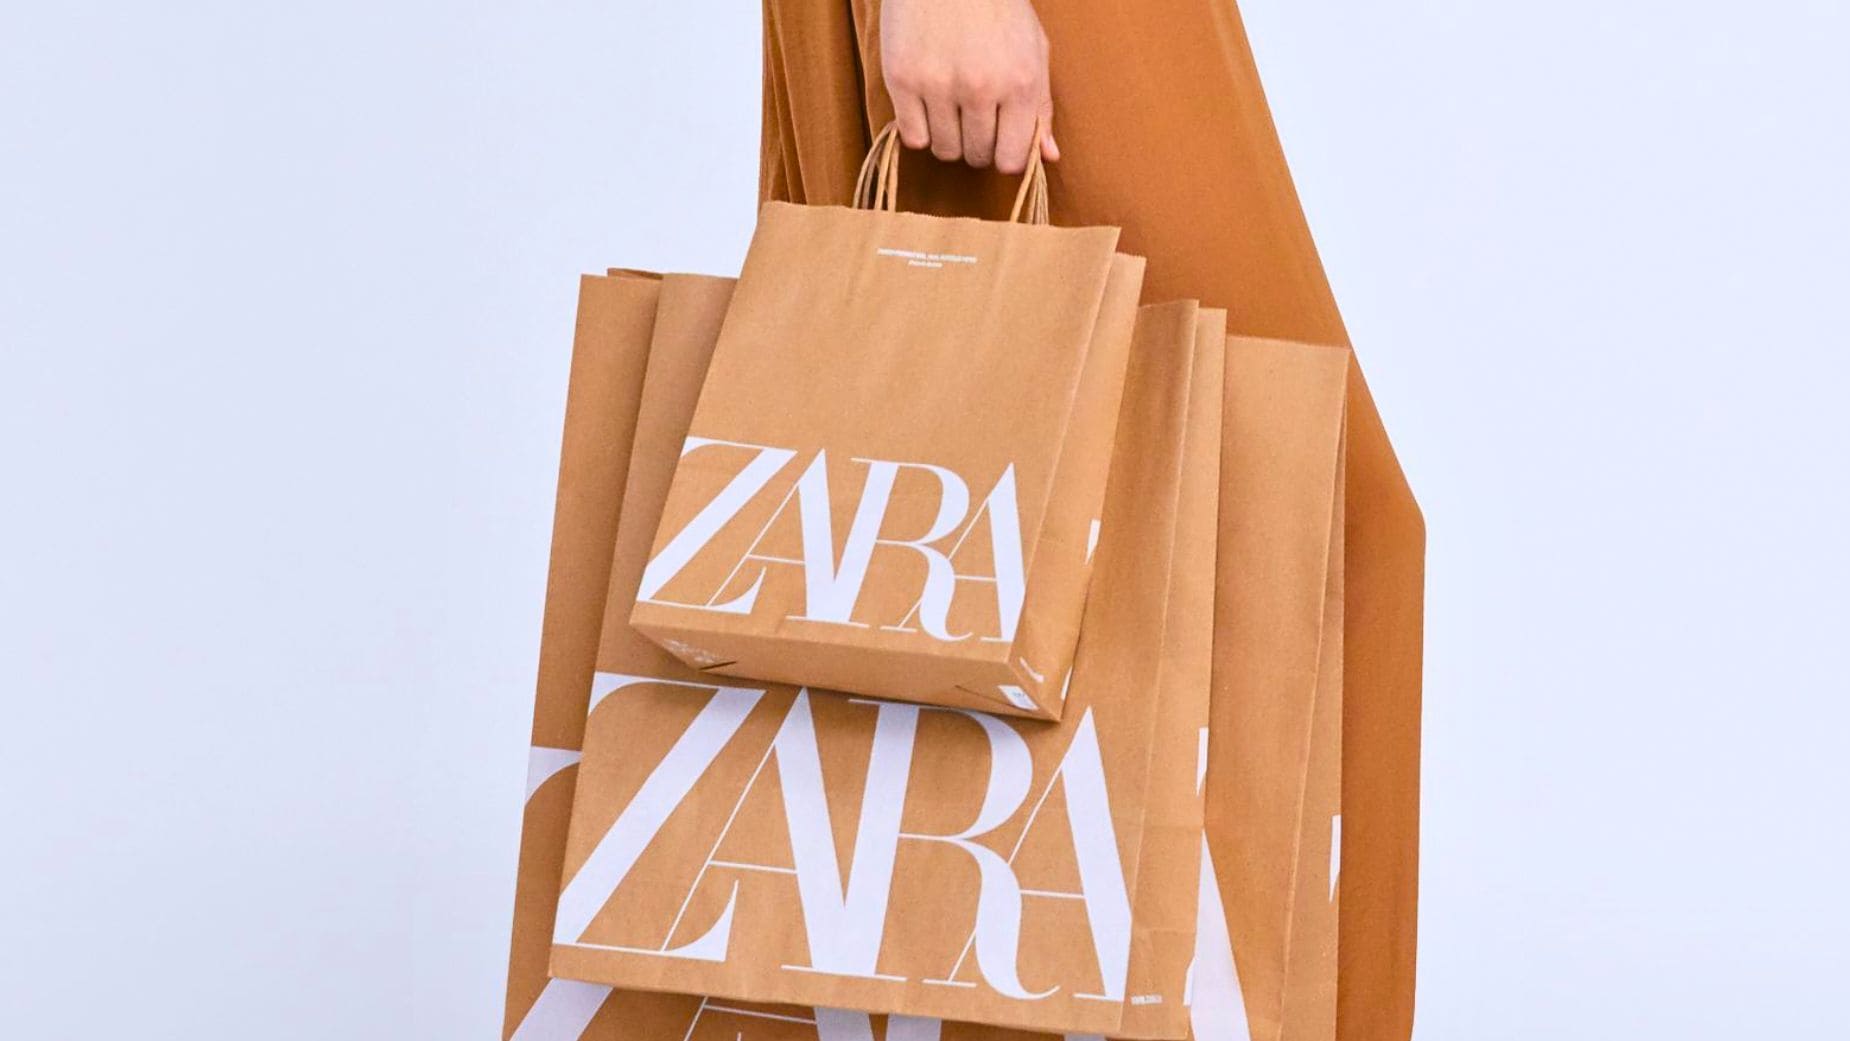 Camisa Zara rebajas descuento verano